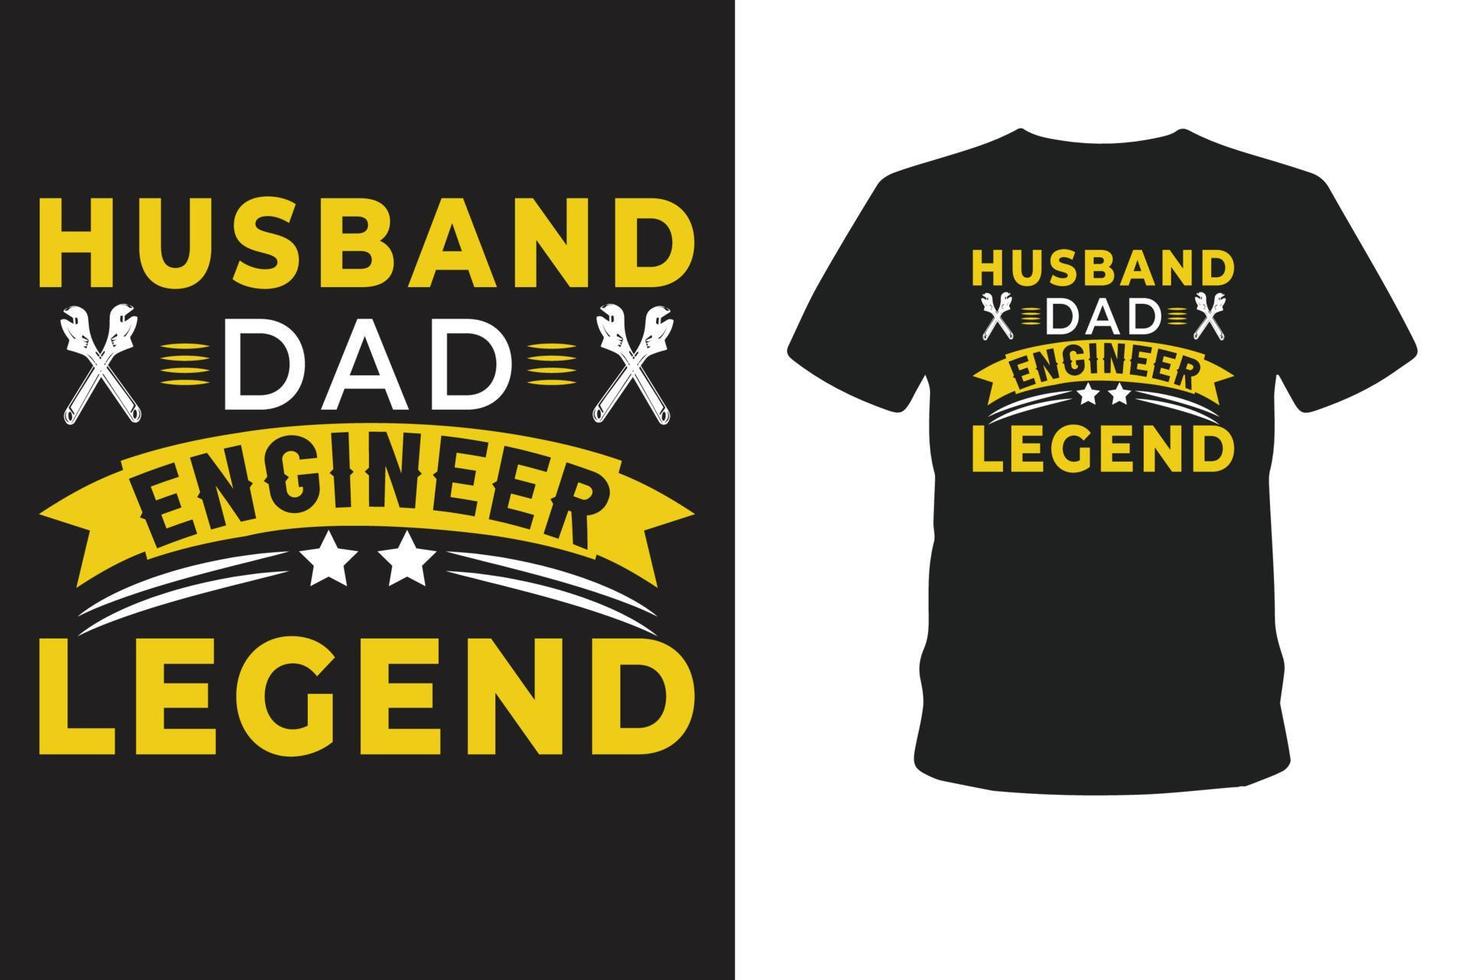 camiseta com a lenda do engenheiro pai marido. vetor